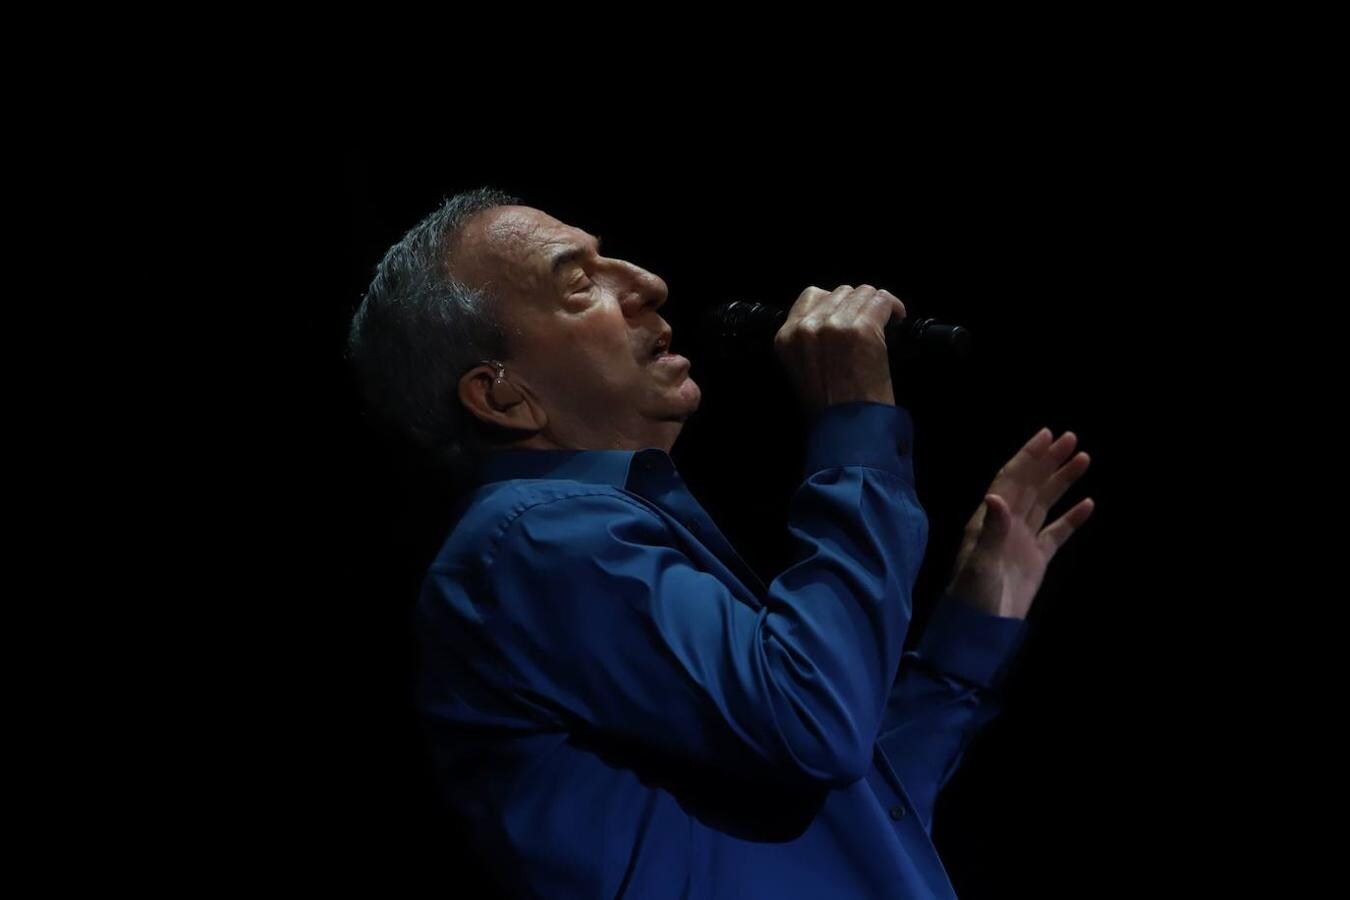 El concierto de José Luis Perales en Córdoba, en imágenes